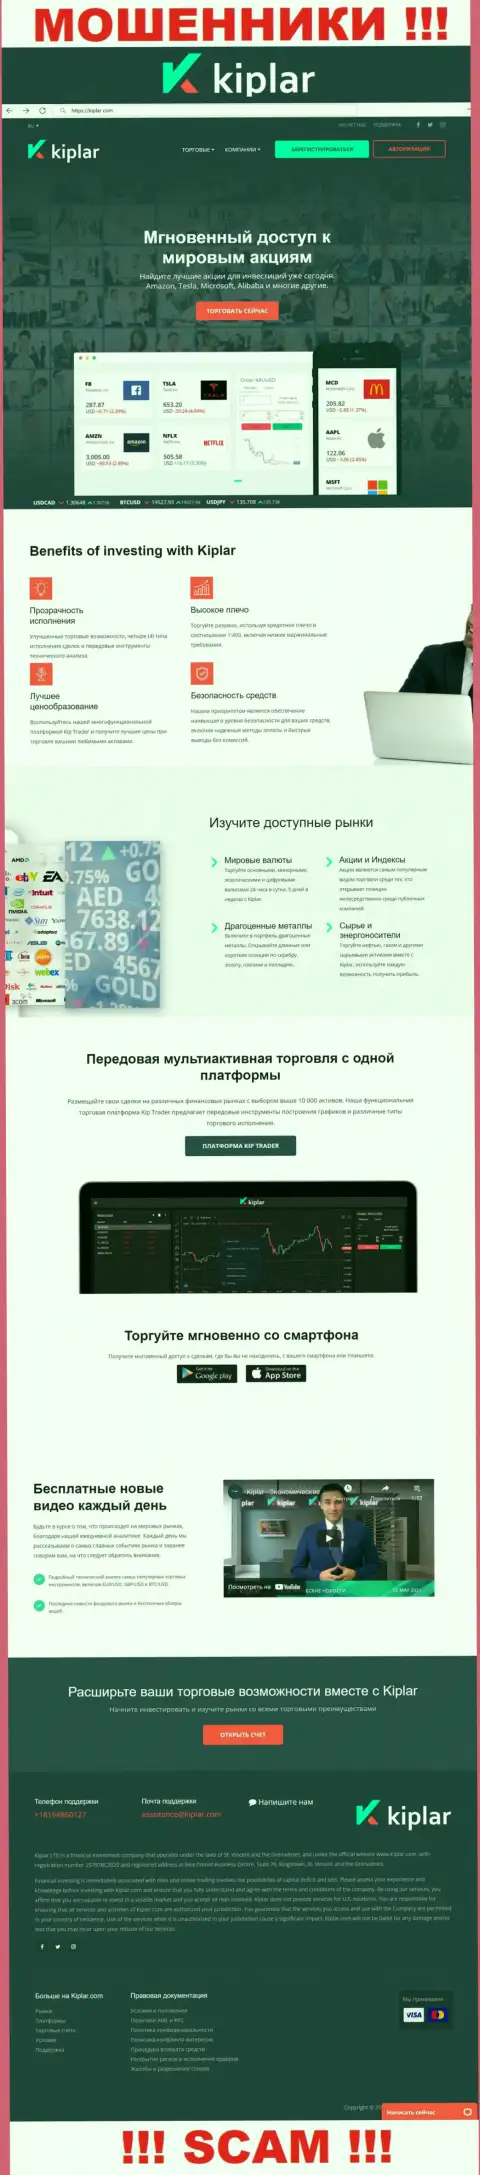 Киплар Ком - это официальный веб-сервис интернет-мошенников Киплар